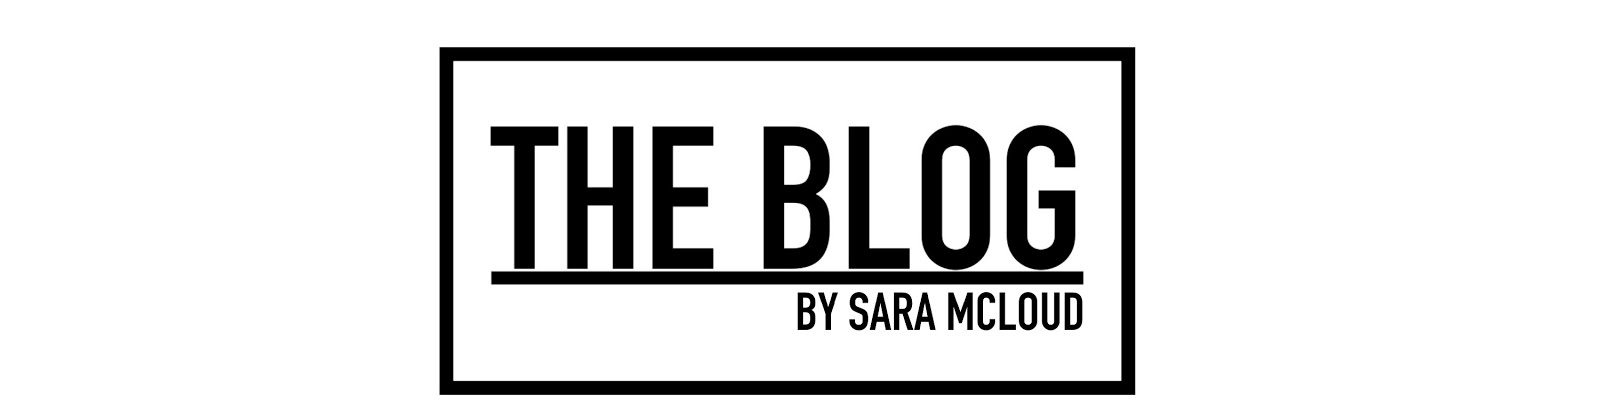 THE BLOG by Sara McLoud